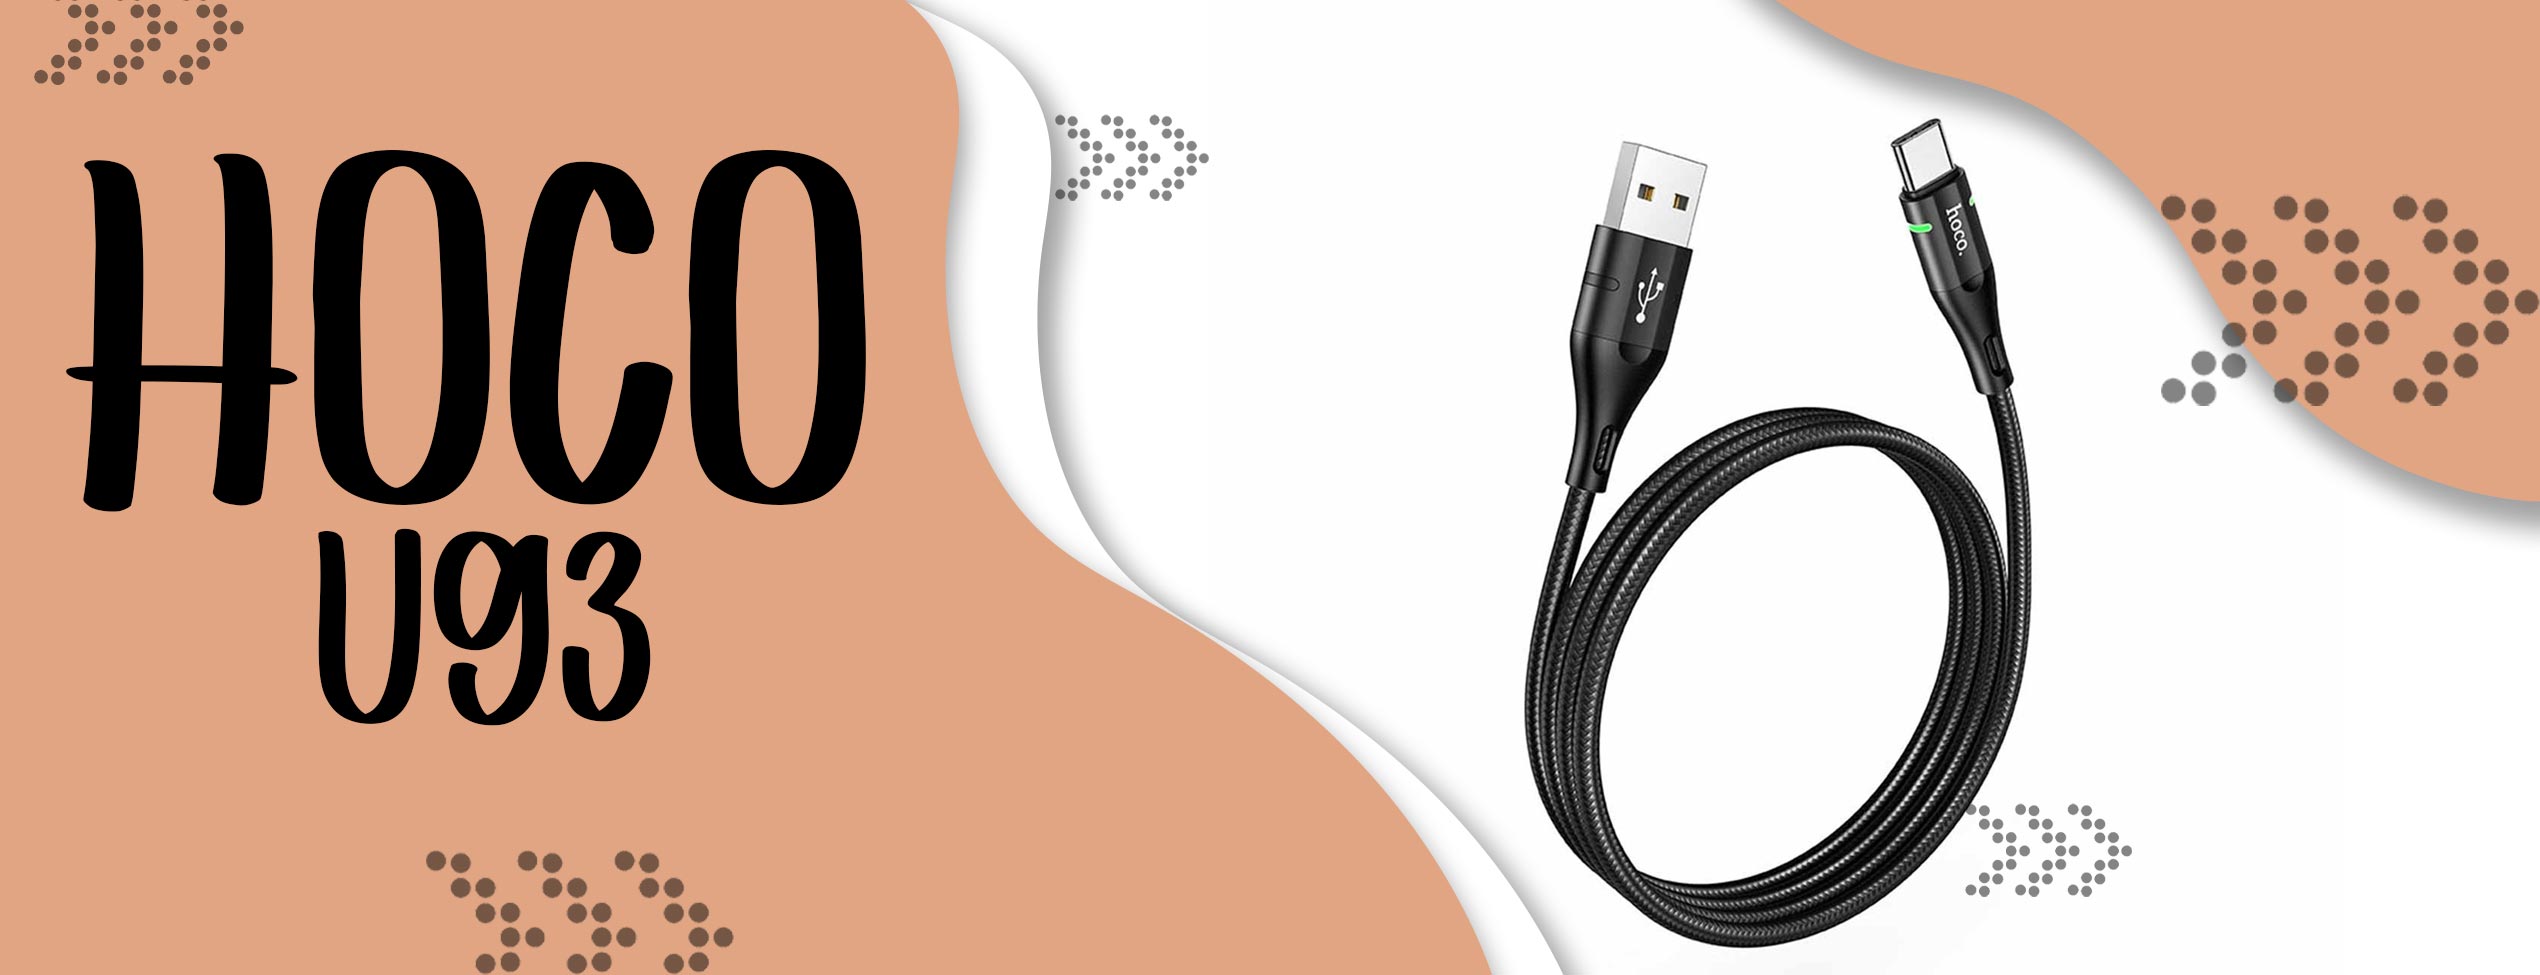 کابل تبدیل USB به Type-C هوکو U93